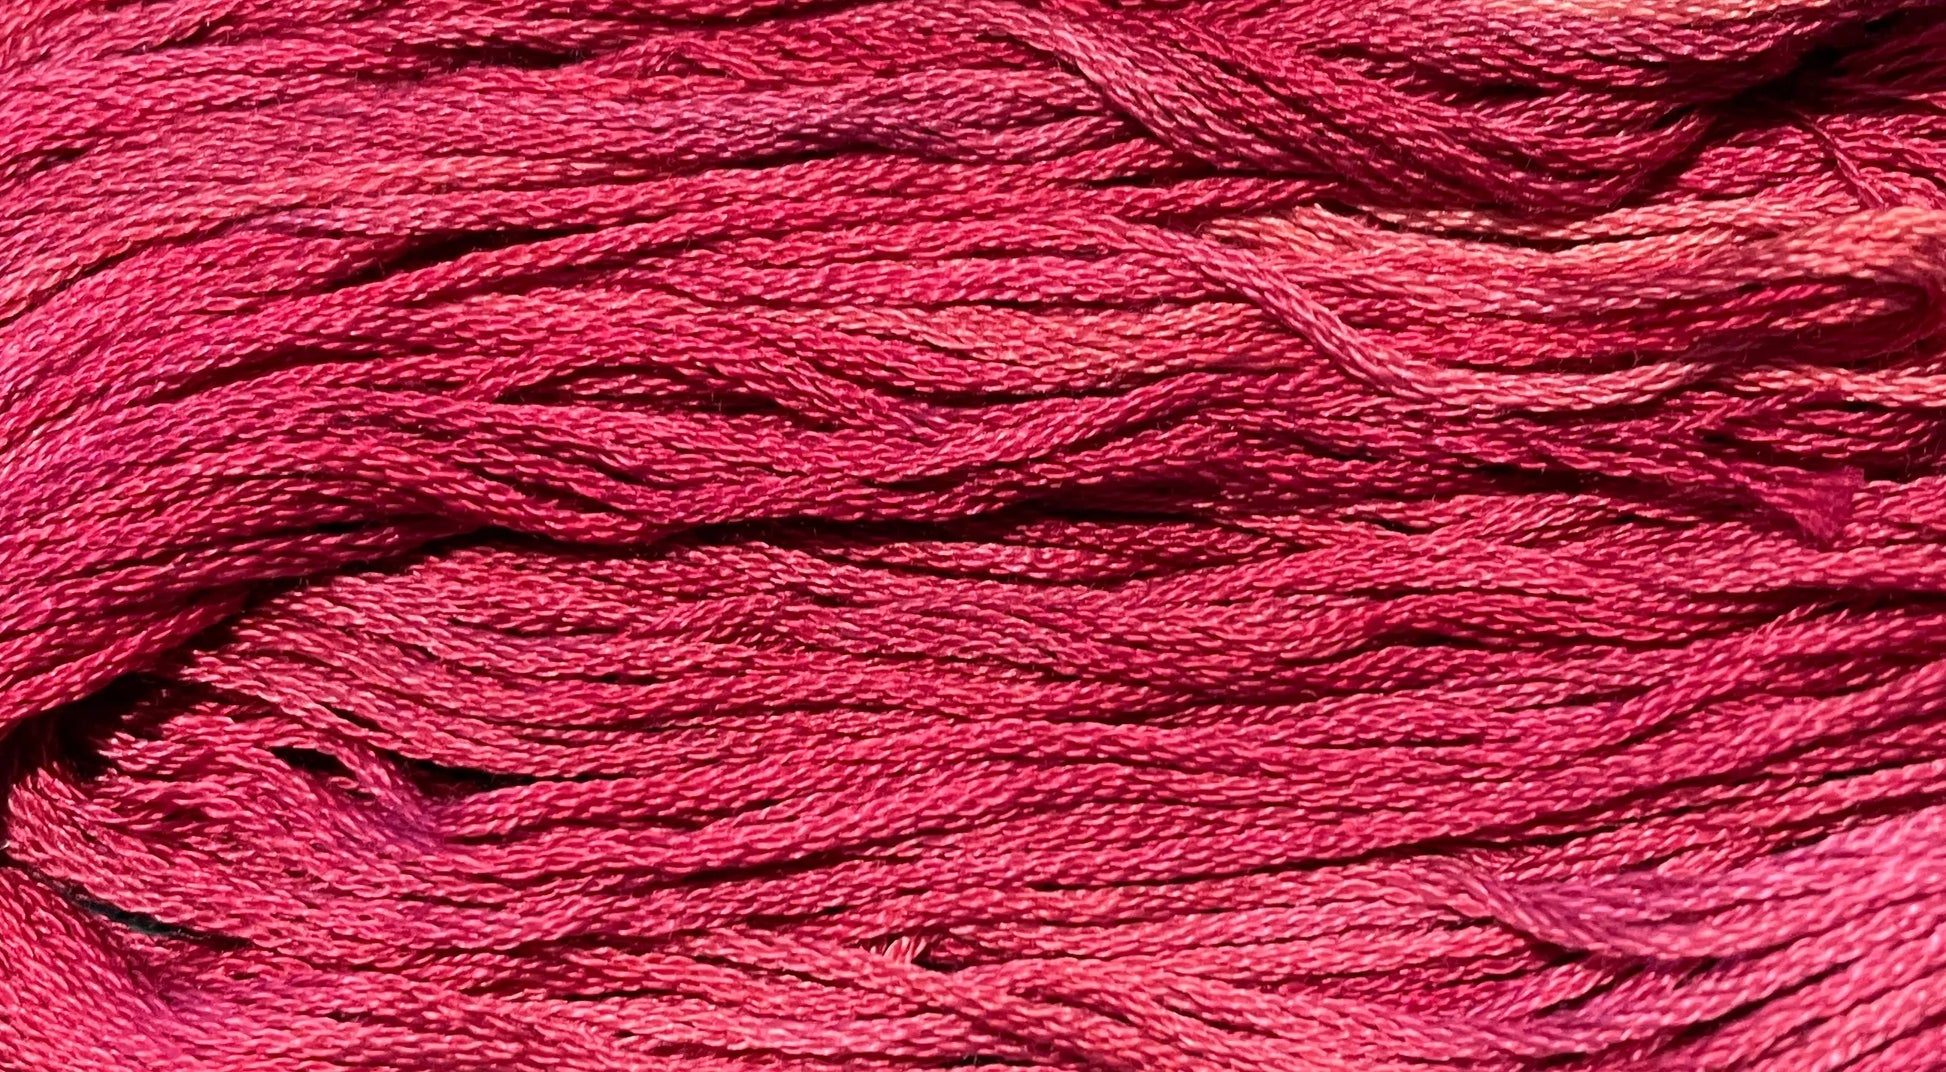 Pomegranate - Gentle Arts Cotton Thread - 5 yard Skein - Cross Stitch Floss, Thread & Floss, Thread & Floss, The Crafty Grimalkin - A Cross Stitch Store